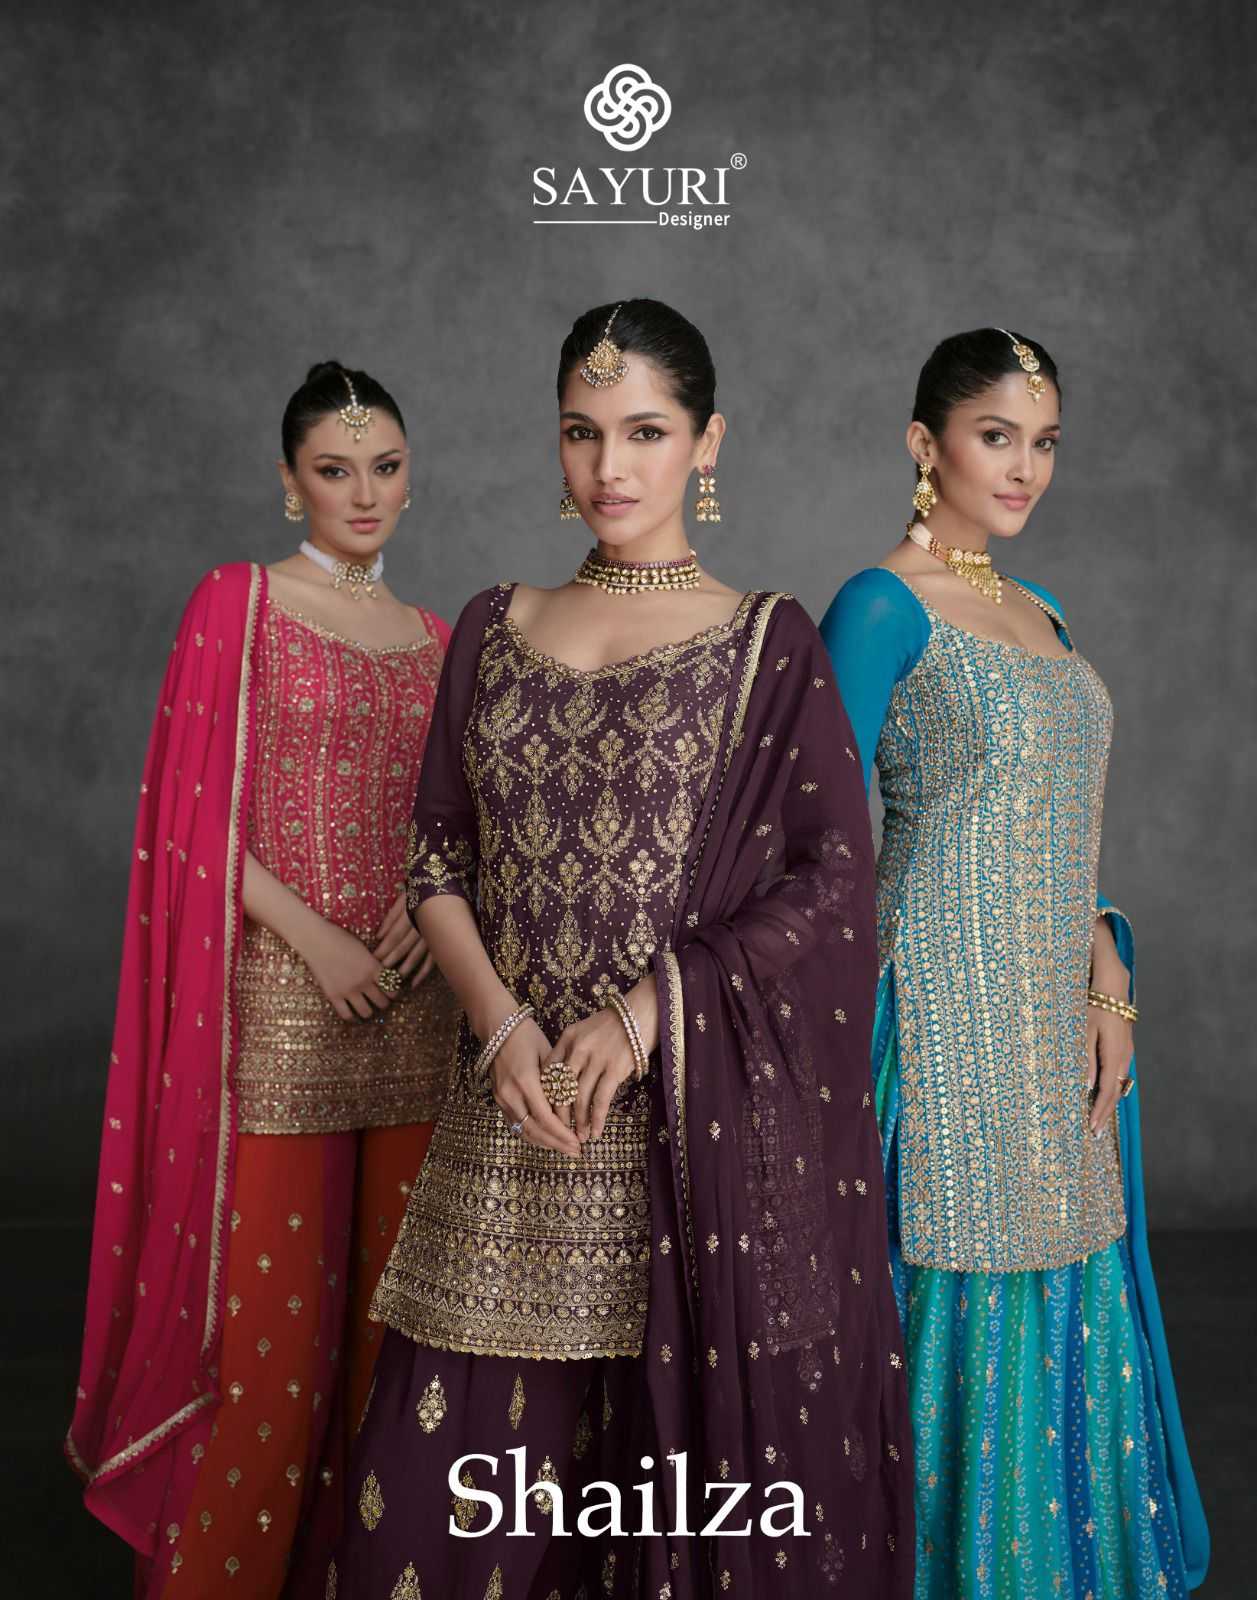 sayuri designer shailza readymade plazo style occasion wear salwar kameez